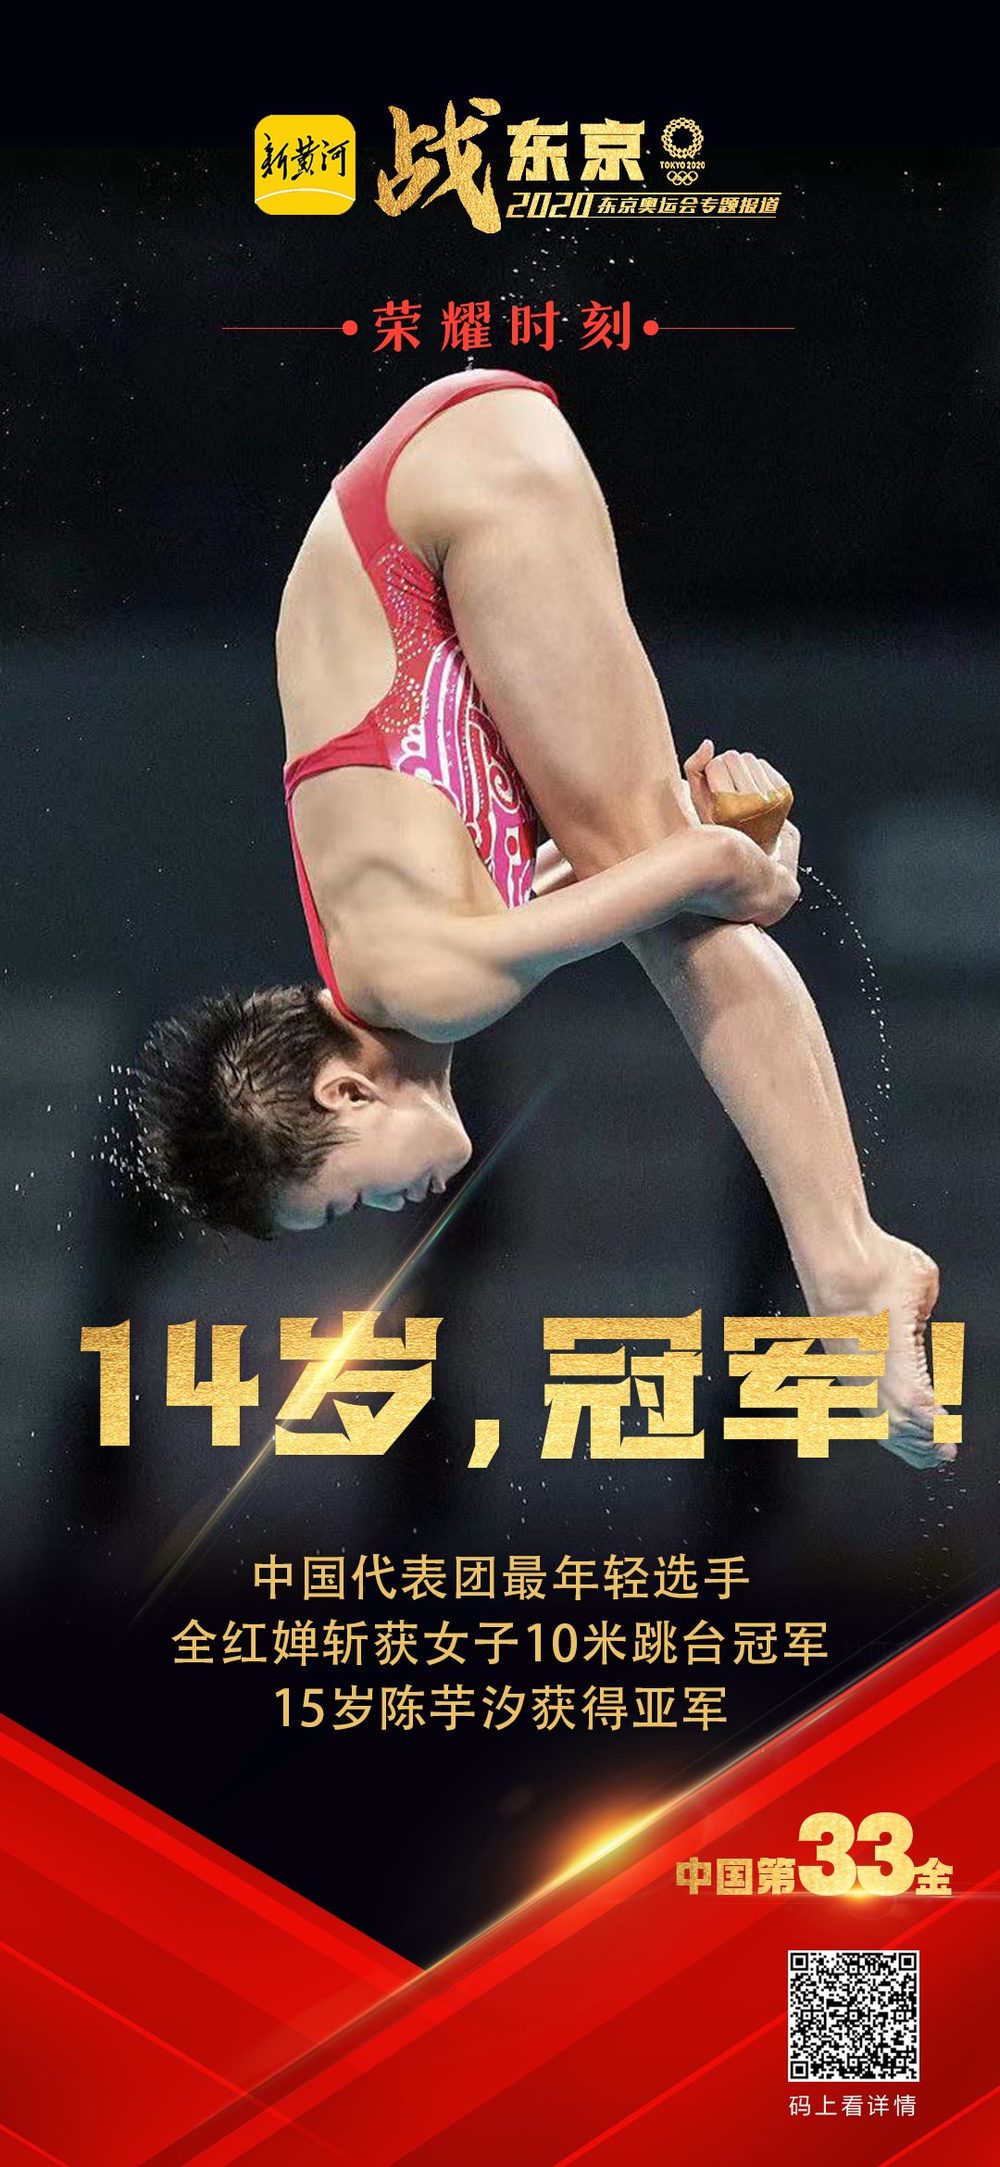 14岁全红婵女子10米跳台夺冠，成为中国代表团东京奥运会最年轻冠军